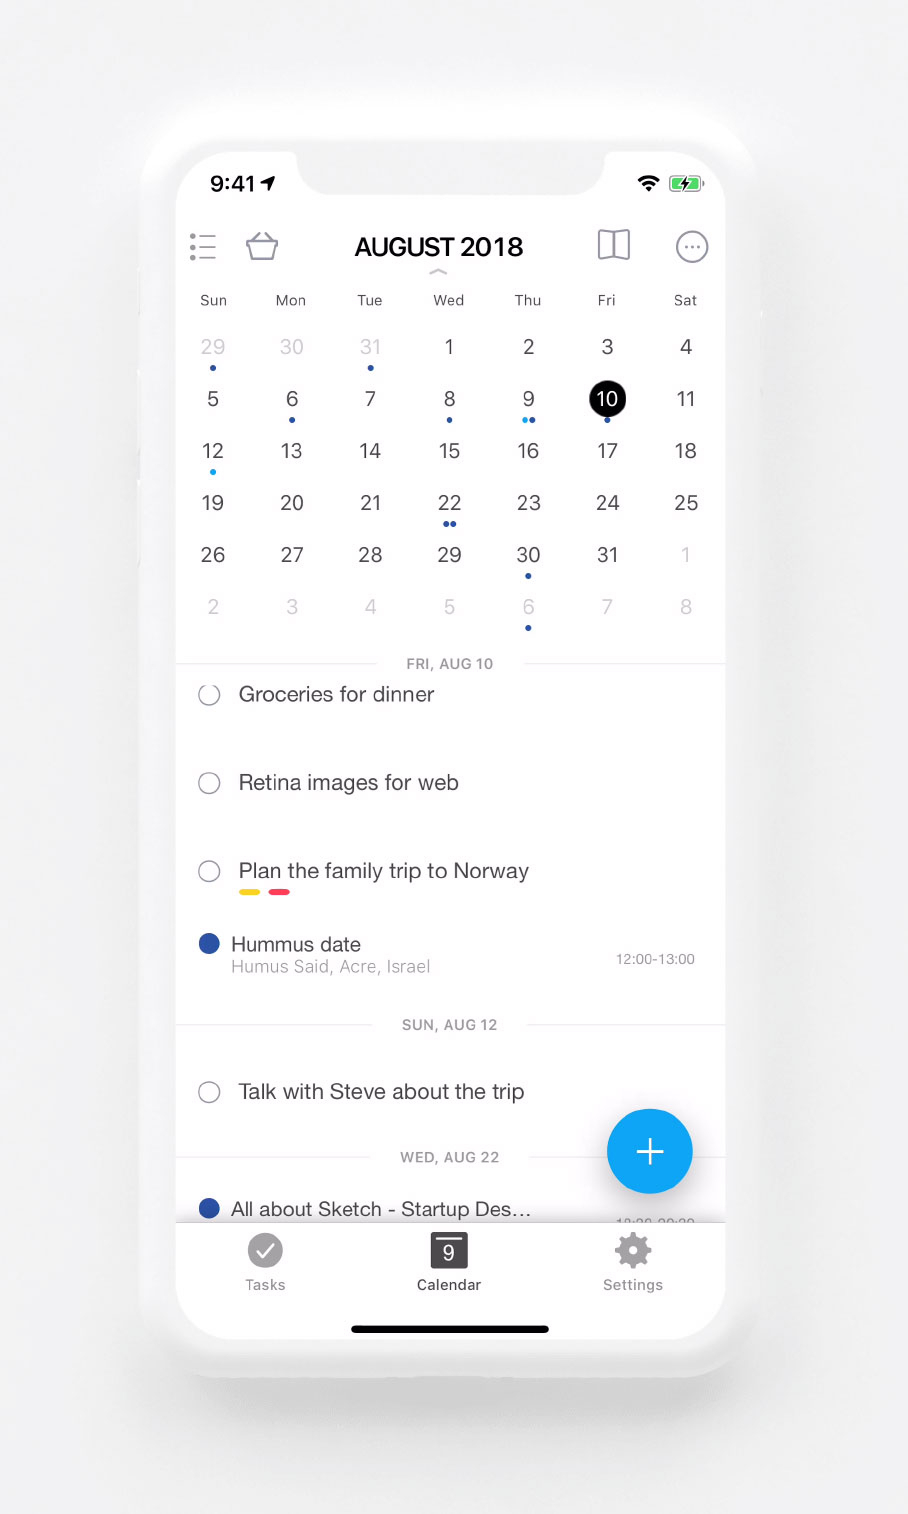 Free Calendar App  Google Calendar Alternative | Any.do with regard to Google Calendar Desktop App